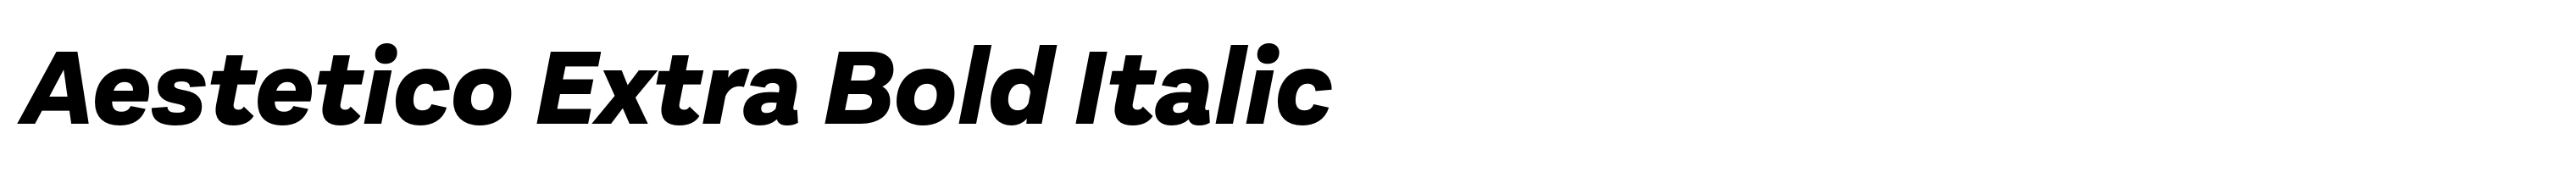 Aestetico Extra Bold Italic